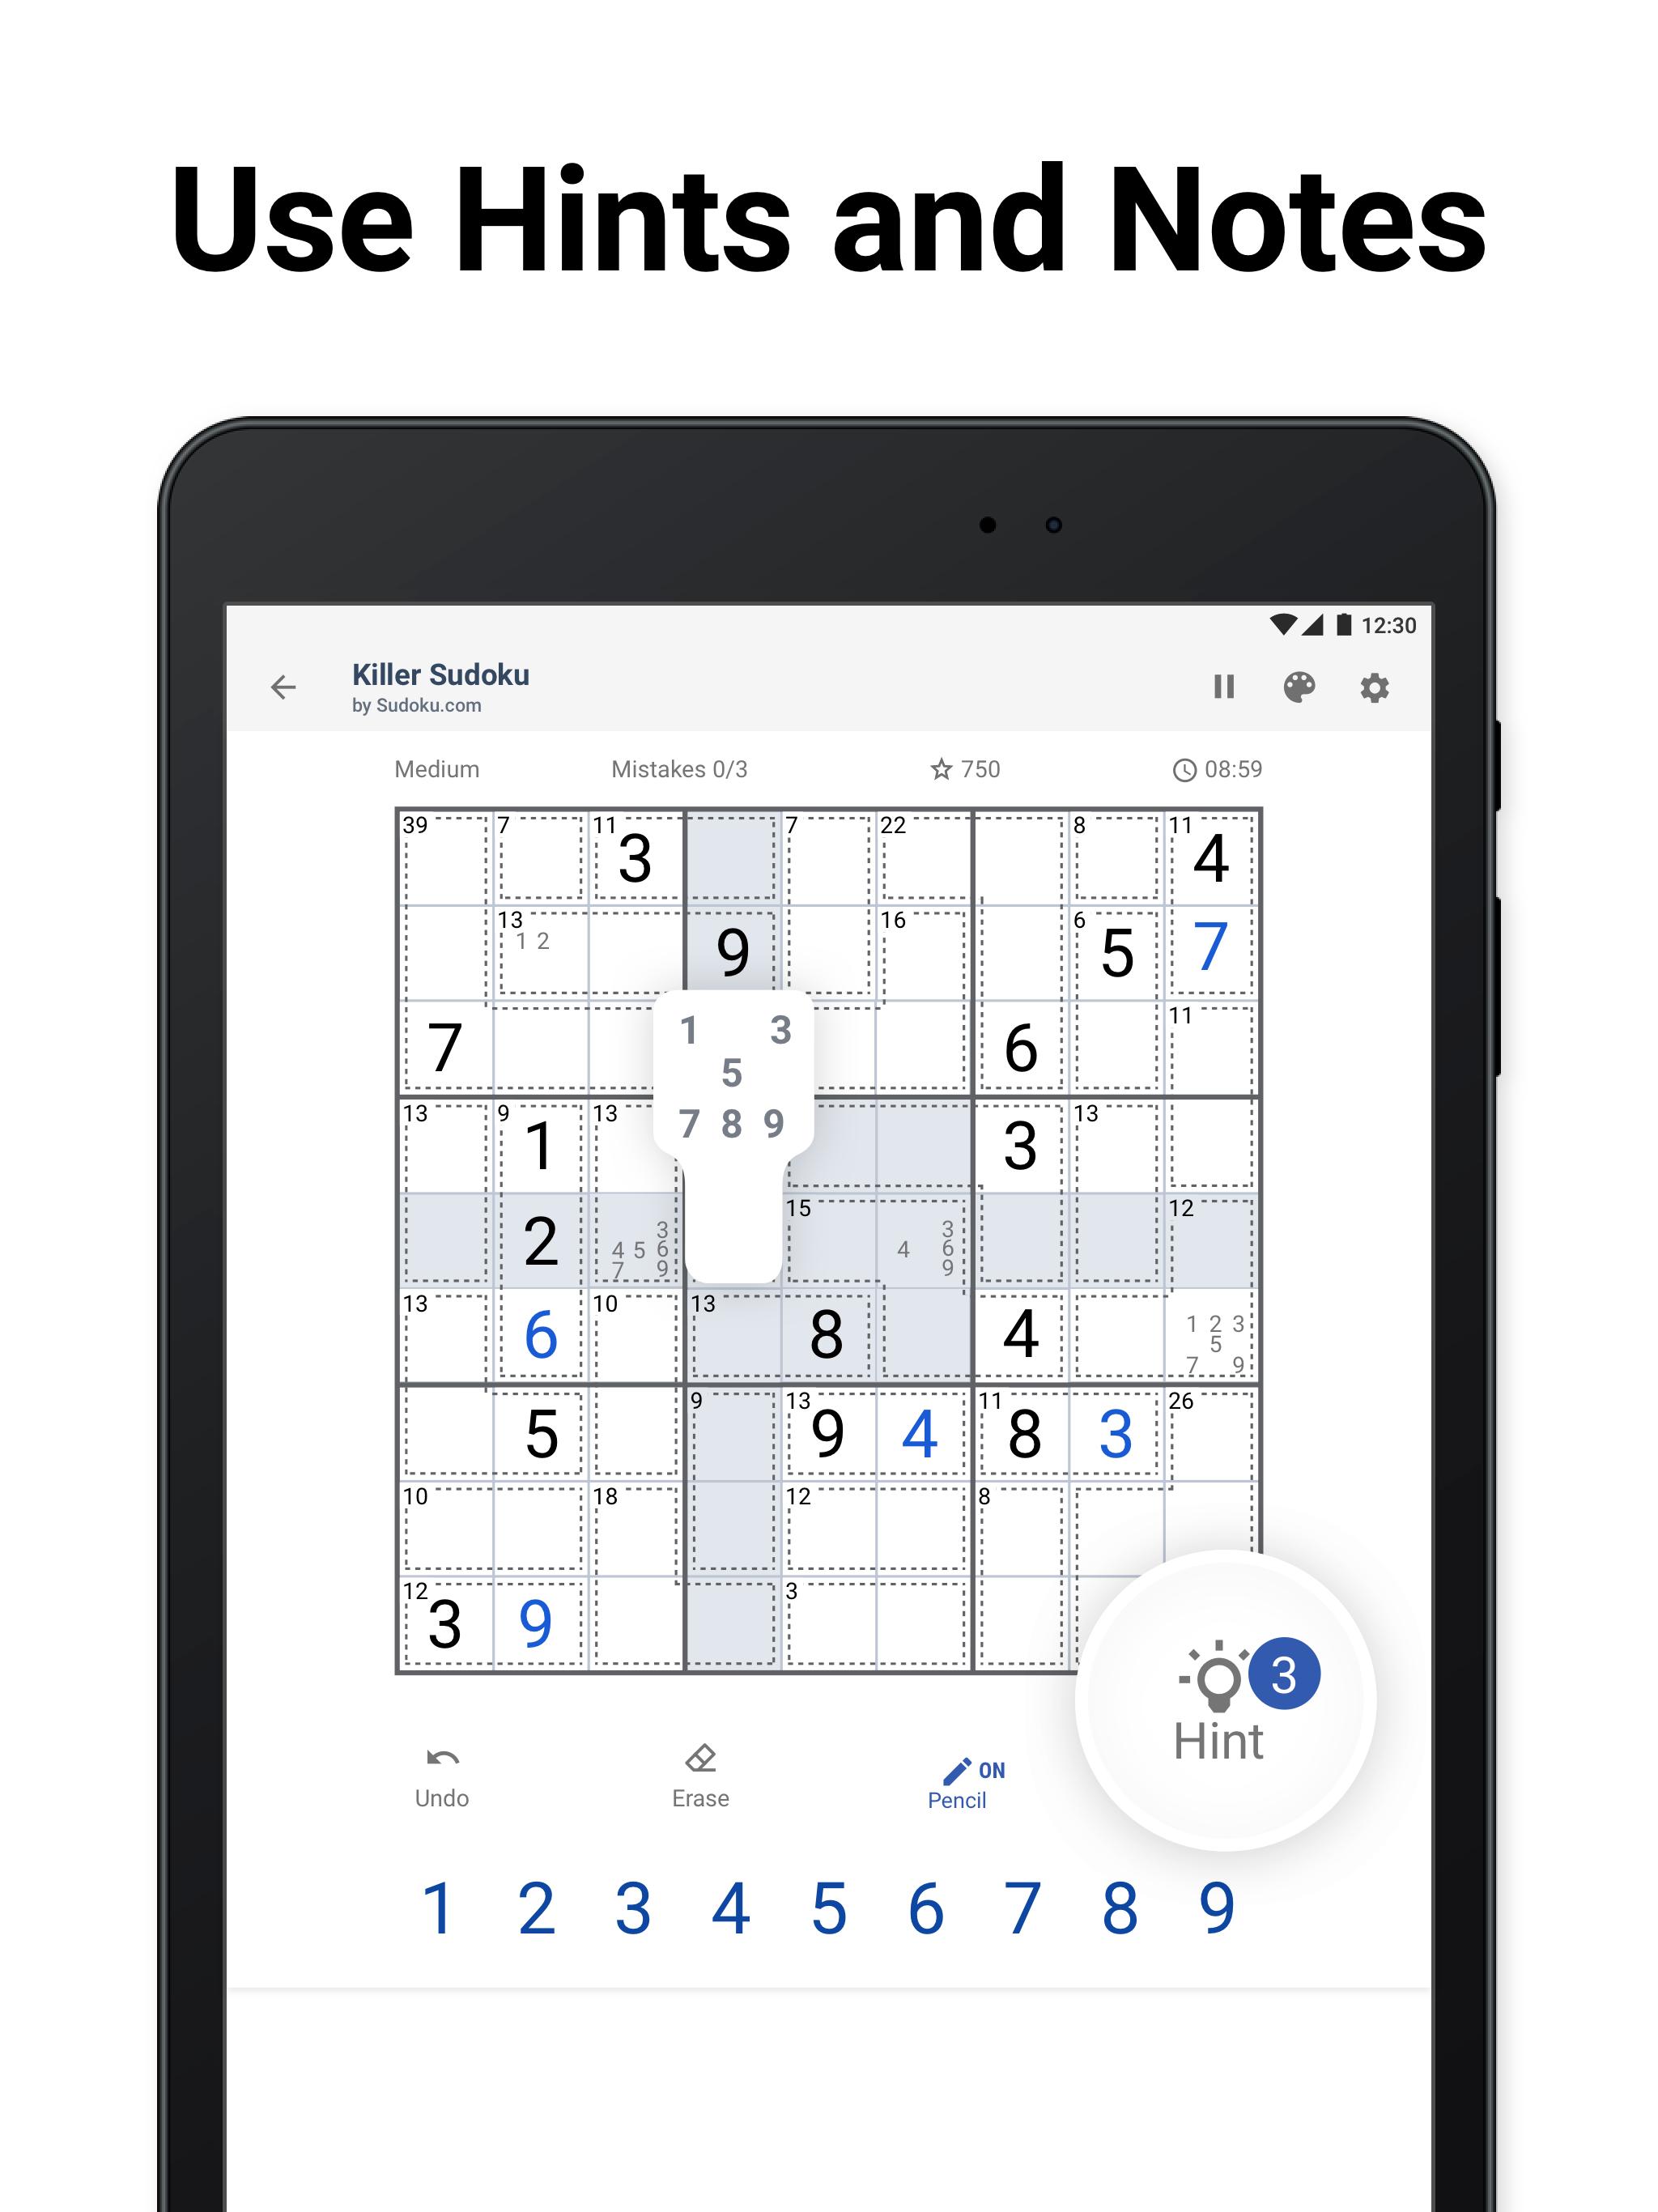 Killer Sudoku by Sudoku.com - Free Logic Puzzles 1.2.1 Screenshot 15